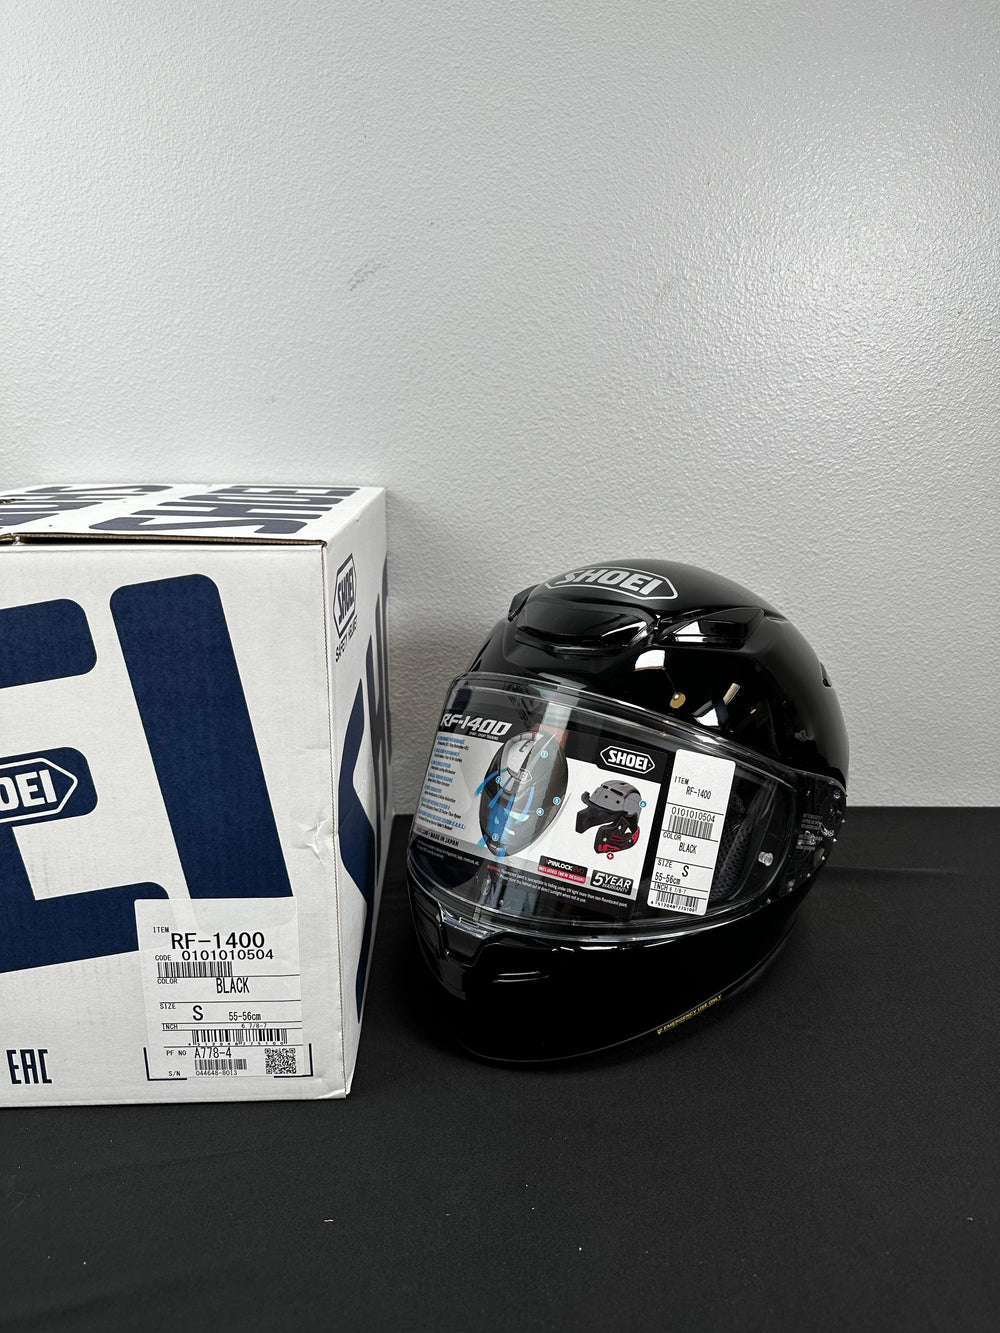 Shoei RF-1400 Helmet - Gloss Black - Size Small - OPEN BOX - Motor Psycho Sport